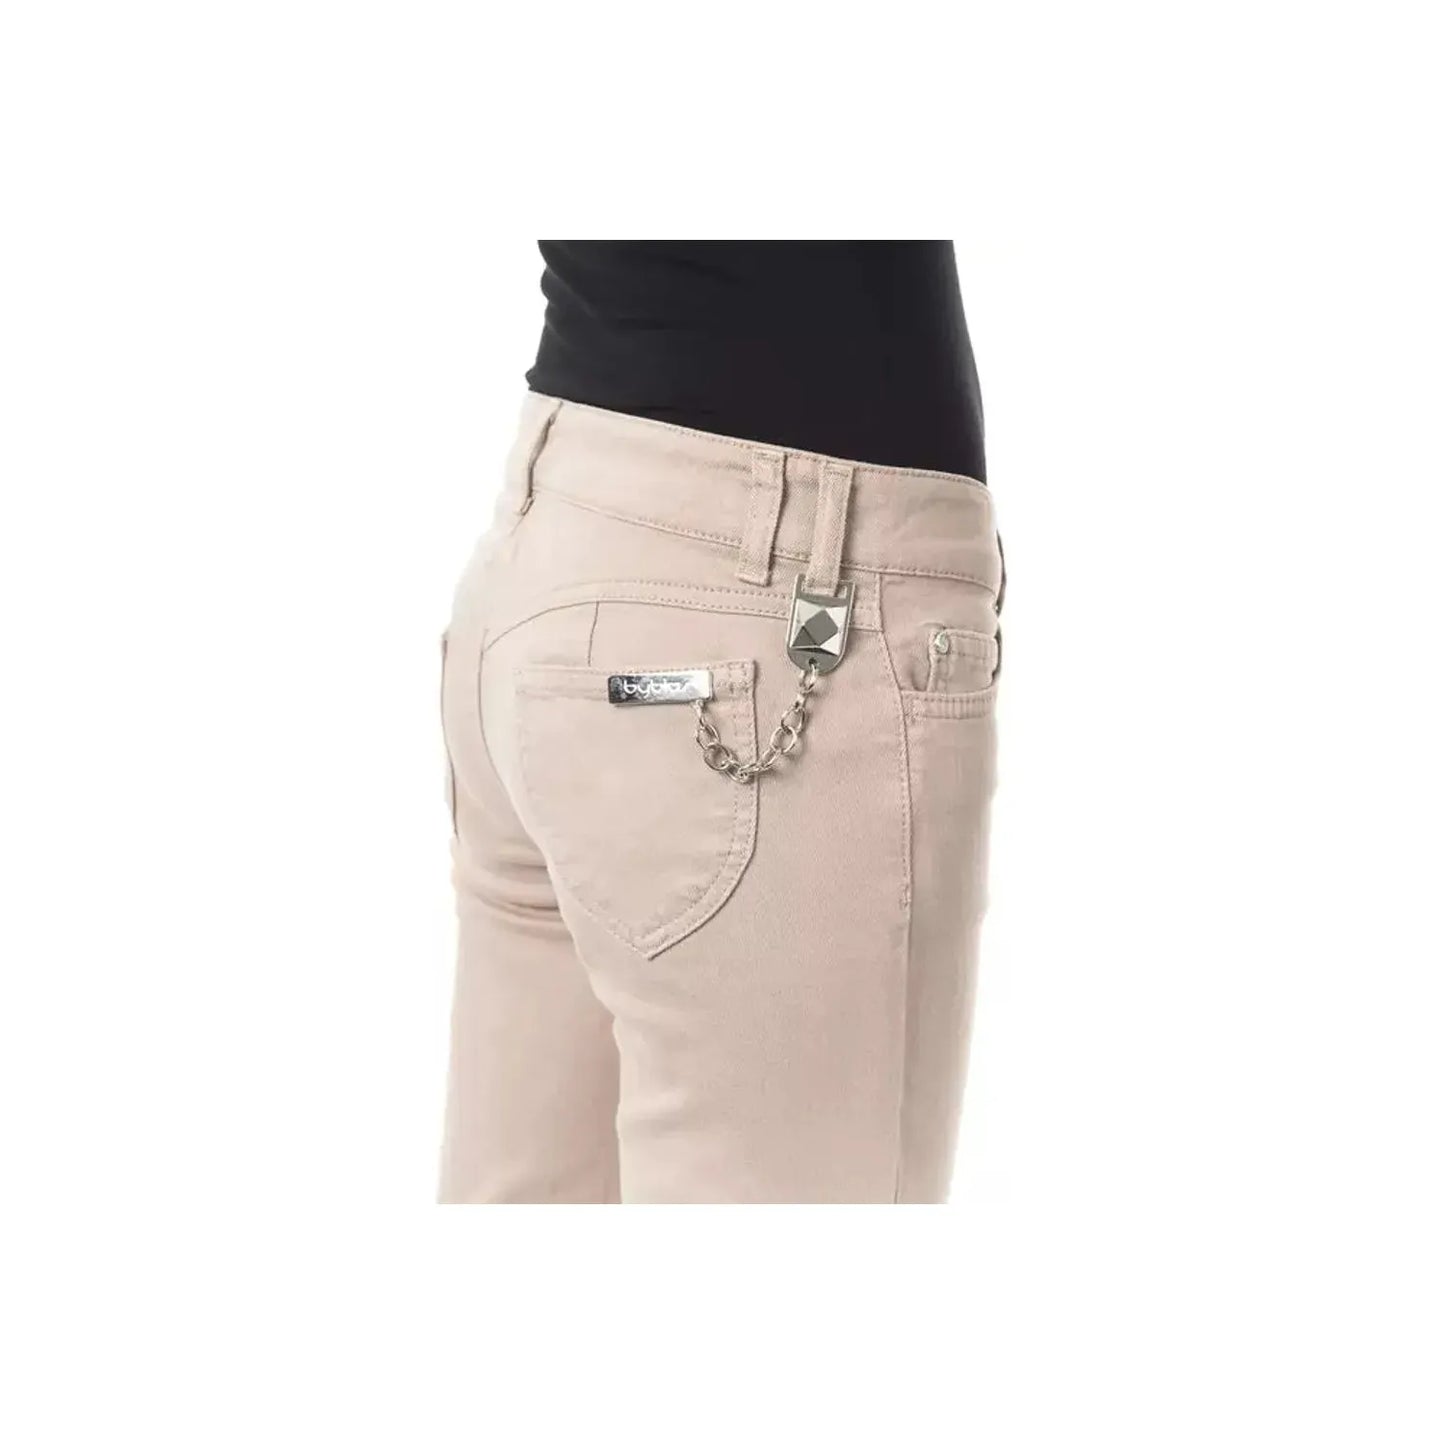 BYBLOS Elegant Beige Slim Fit Pants with Unique Chain Detail beige-cotton-jeans-pant-19 stock_product_image_17634_1001913976-15-43be056a-39c.webp